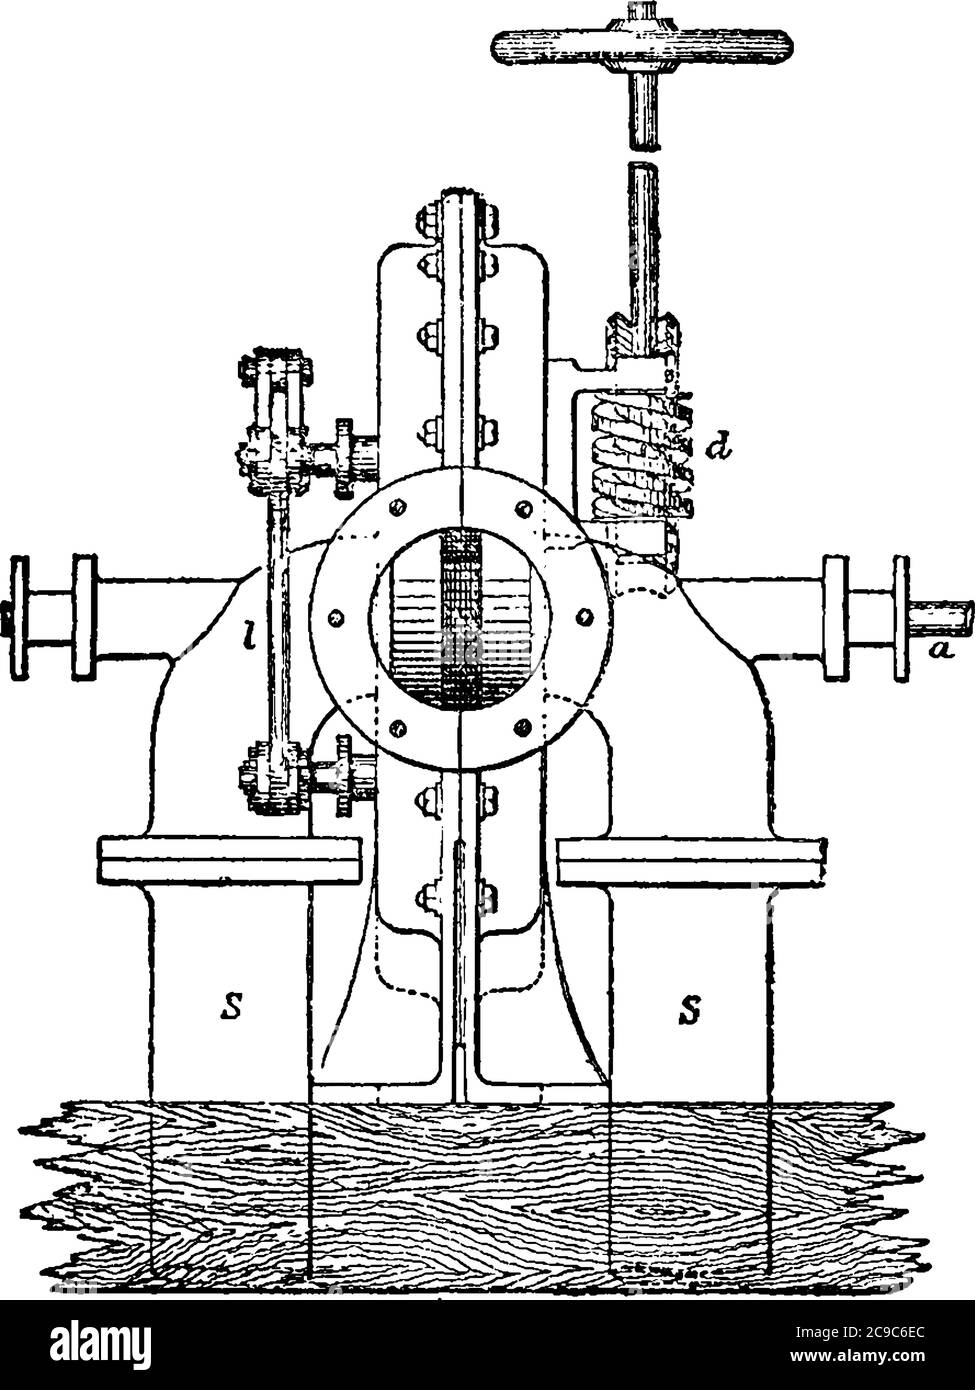 Reaktionsturbine, die bei der Stromerzeugung verwendet wird, wird der Betrieb von ihm durch Newtons drittes Gesetz der Bewegung, Vintage-Linienzeichnung oder Gravur beschrieben Stock Vektor